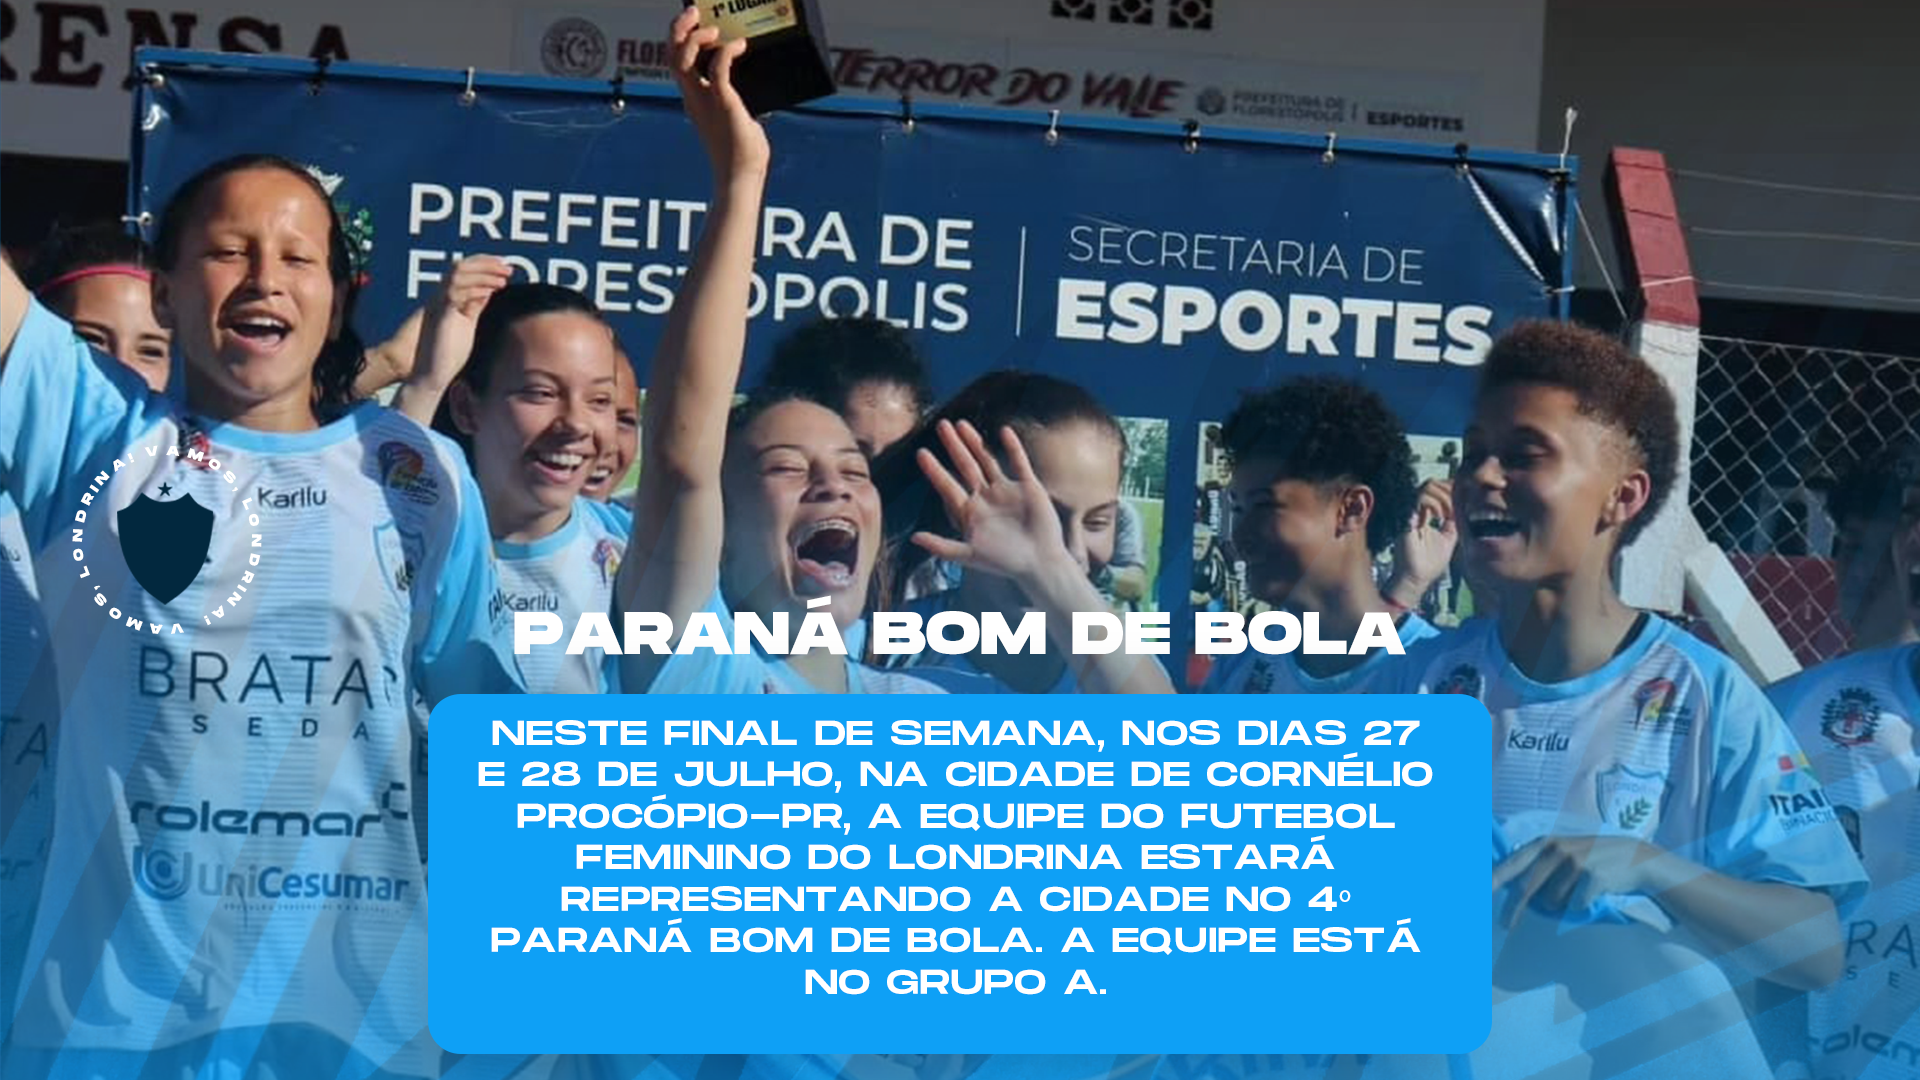 Londrina Futebol Feminino disputa a fase macrorregional do Paraná Bom de Bola